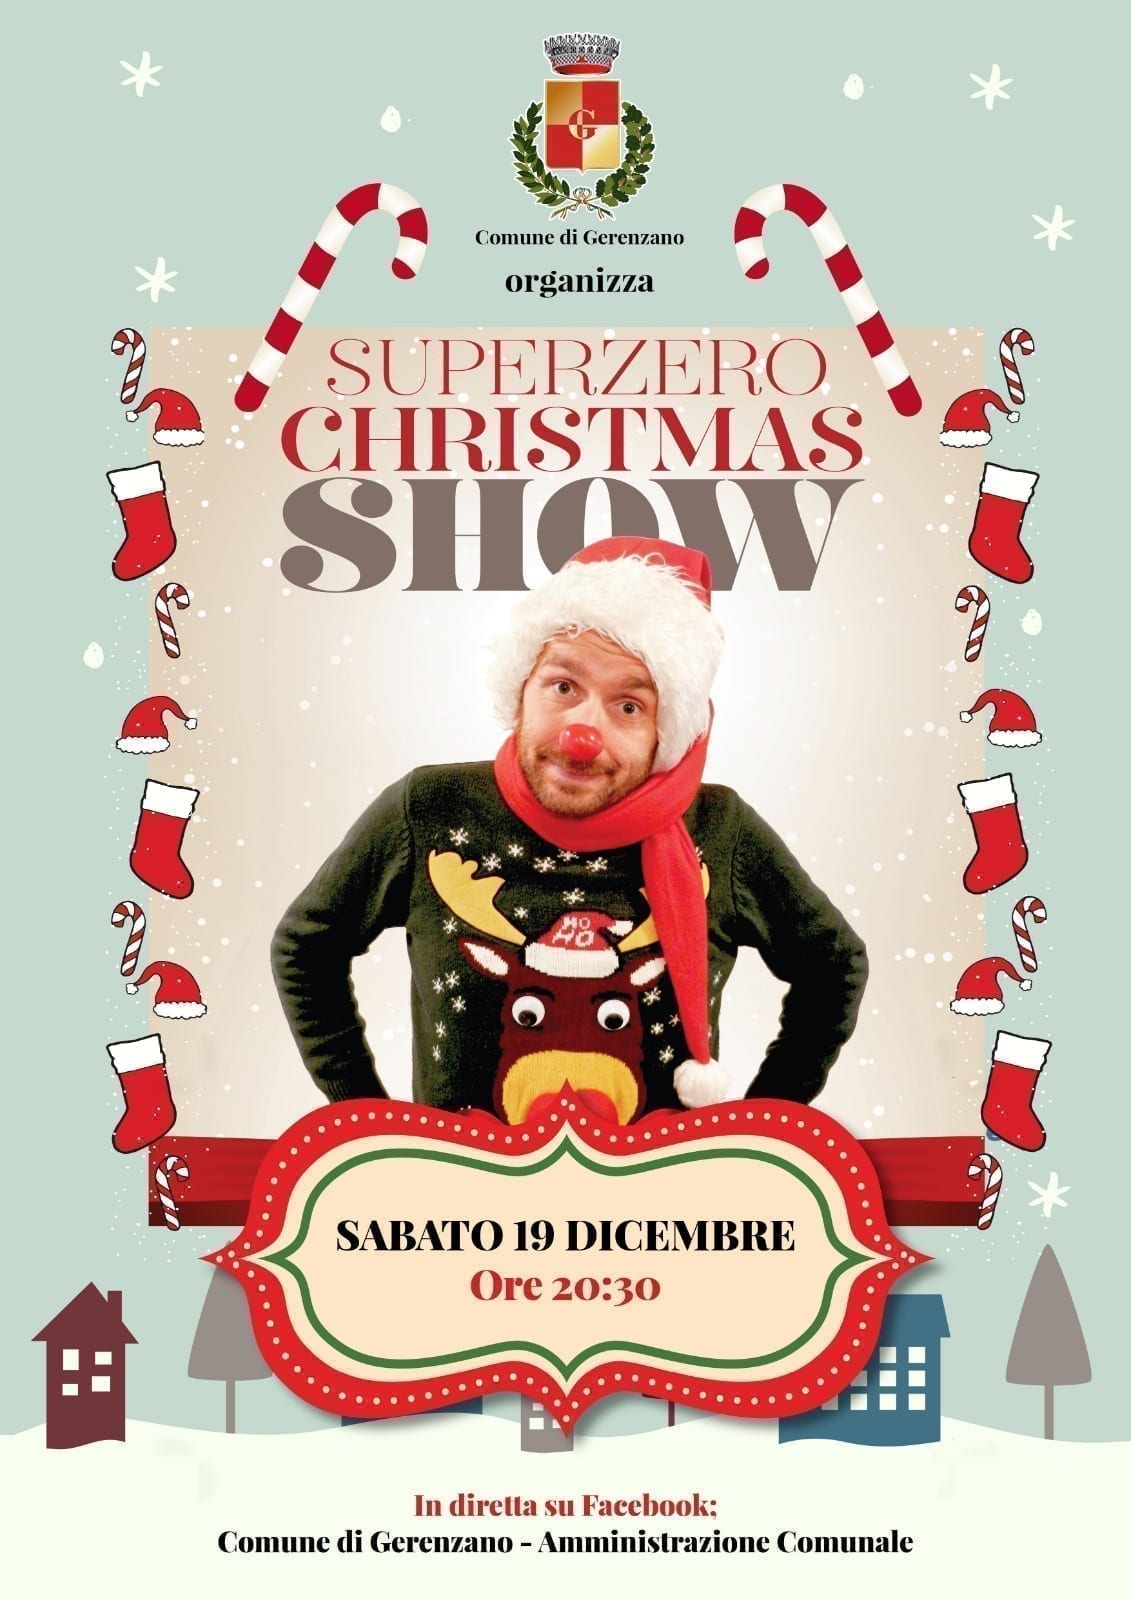 Gerenzano, stasera su Facebook la magia del Christmas show con il mago Superzero